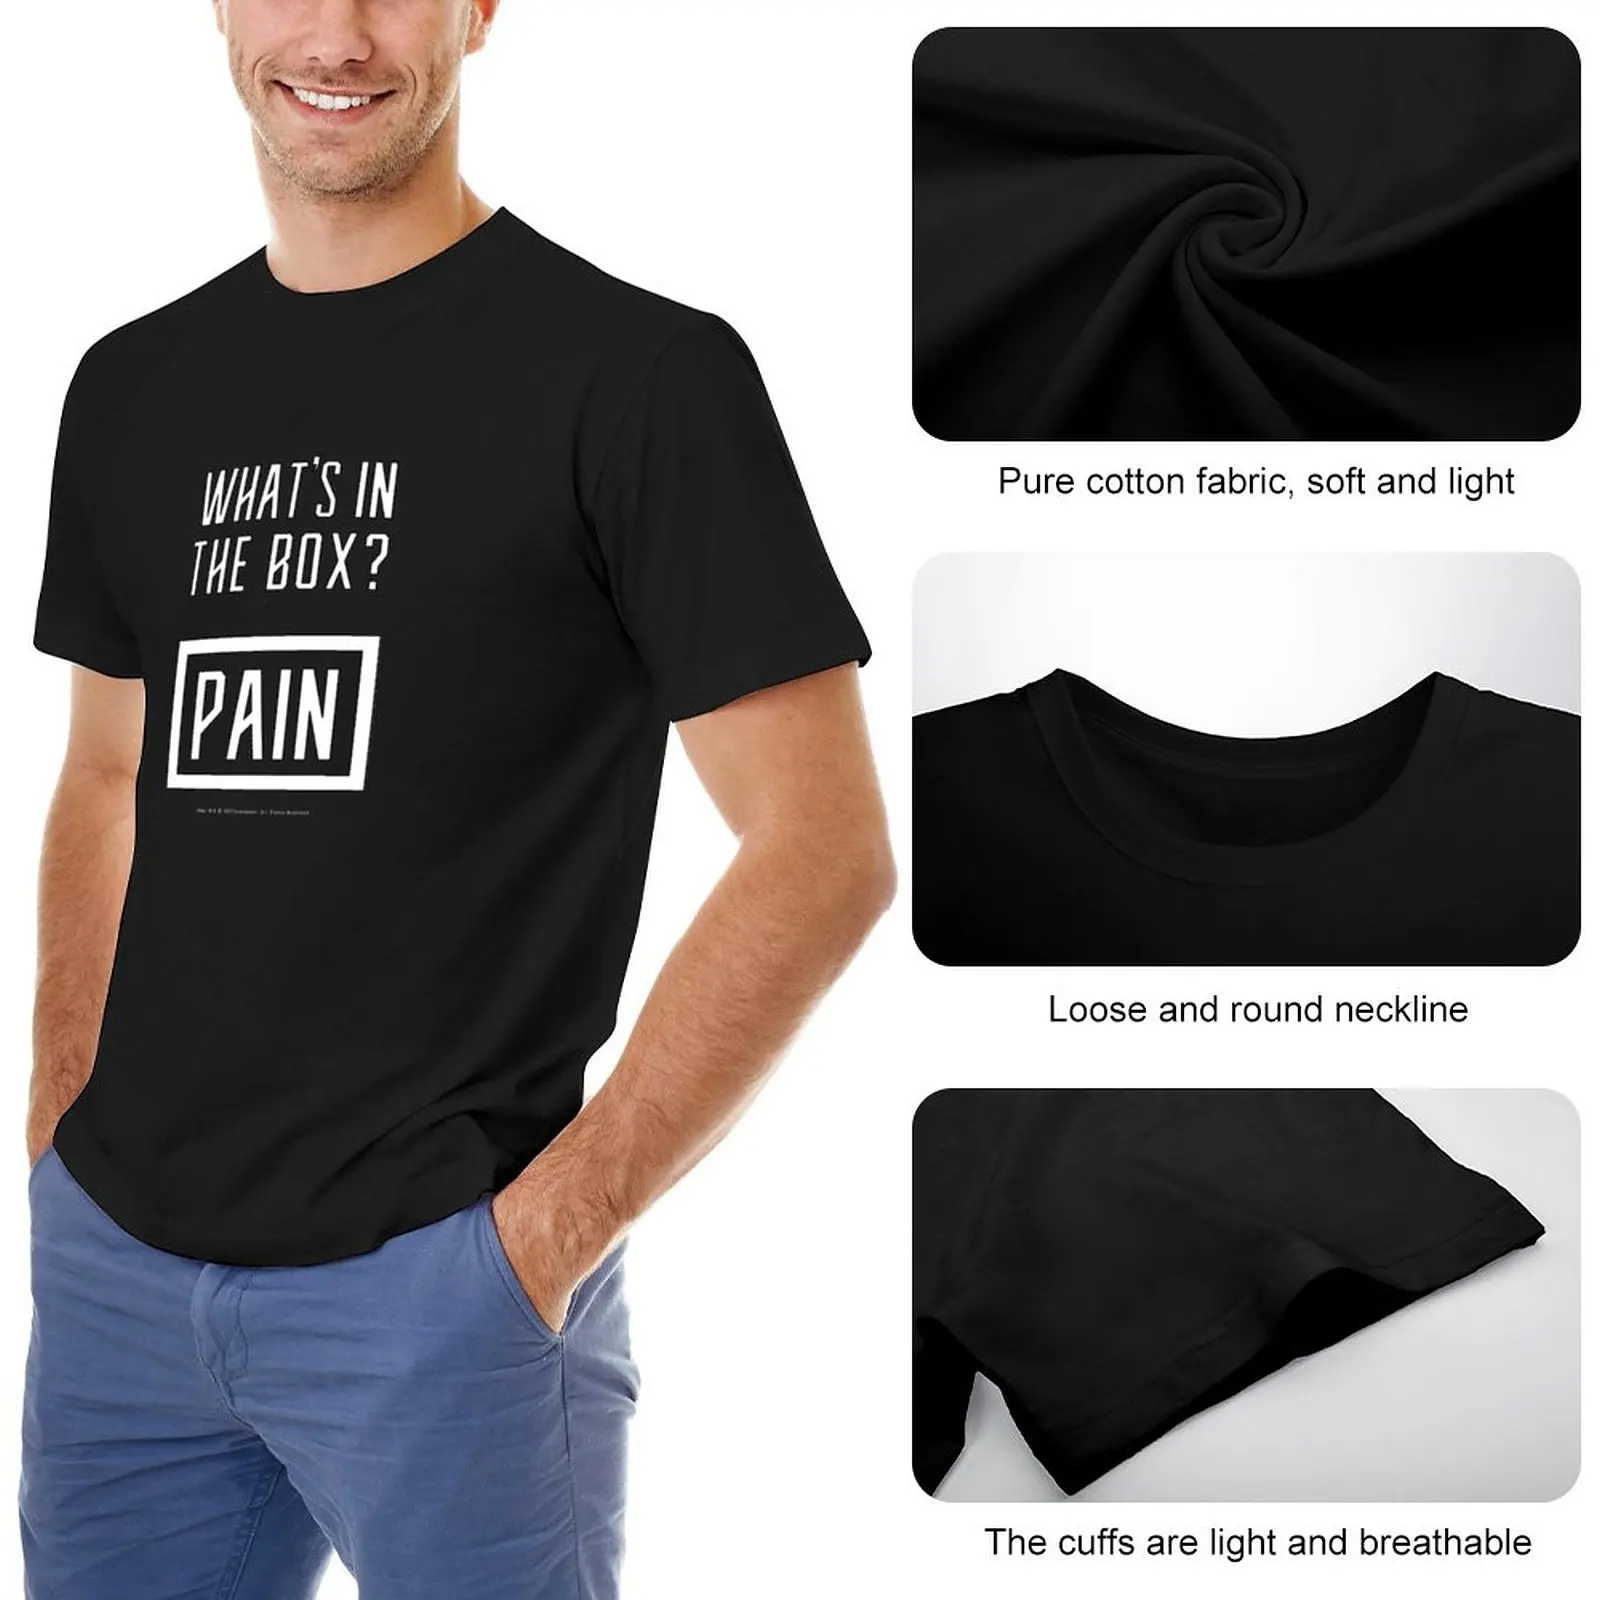 Dune - что в коробке? Pain (Белый) - Футболка с коротким рукавом, эстетичная одежда, черные футболки, мужские футболки в обтяжку. Изображение 1